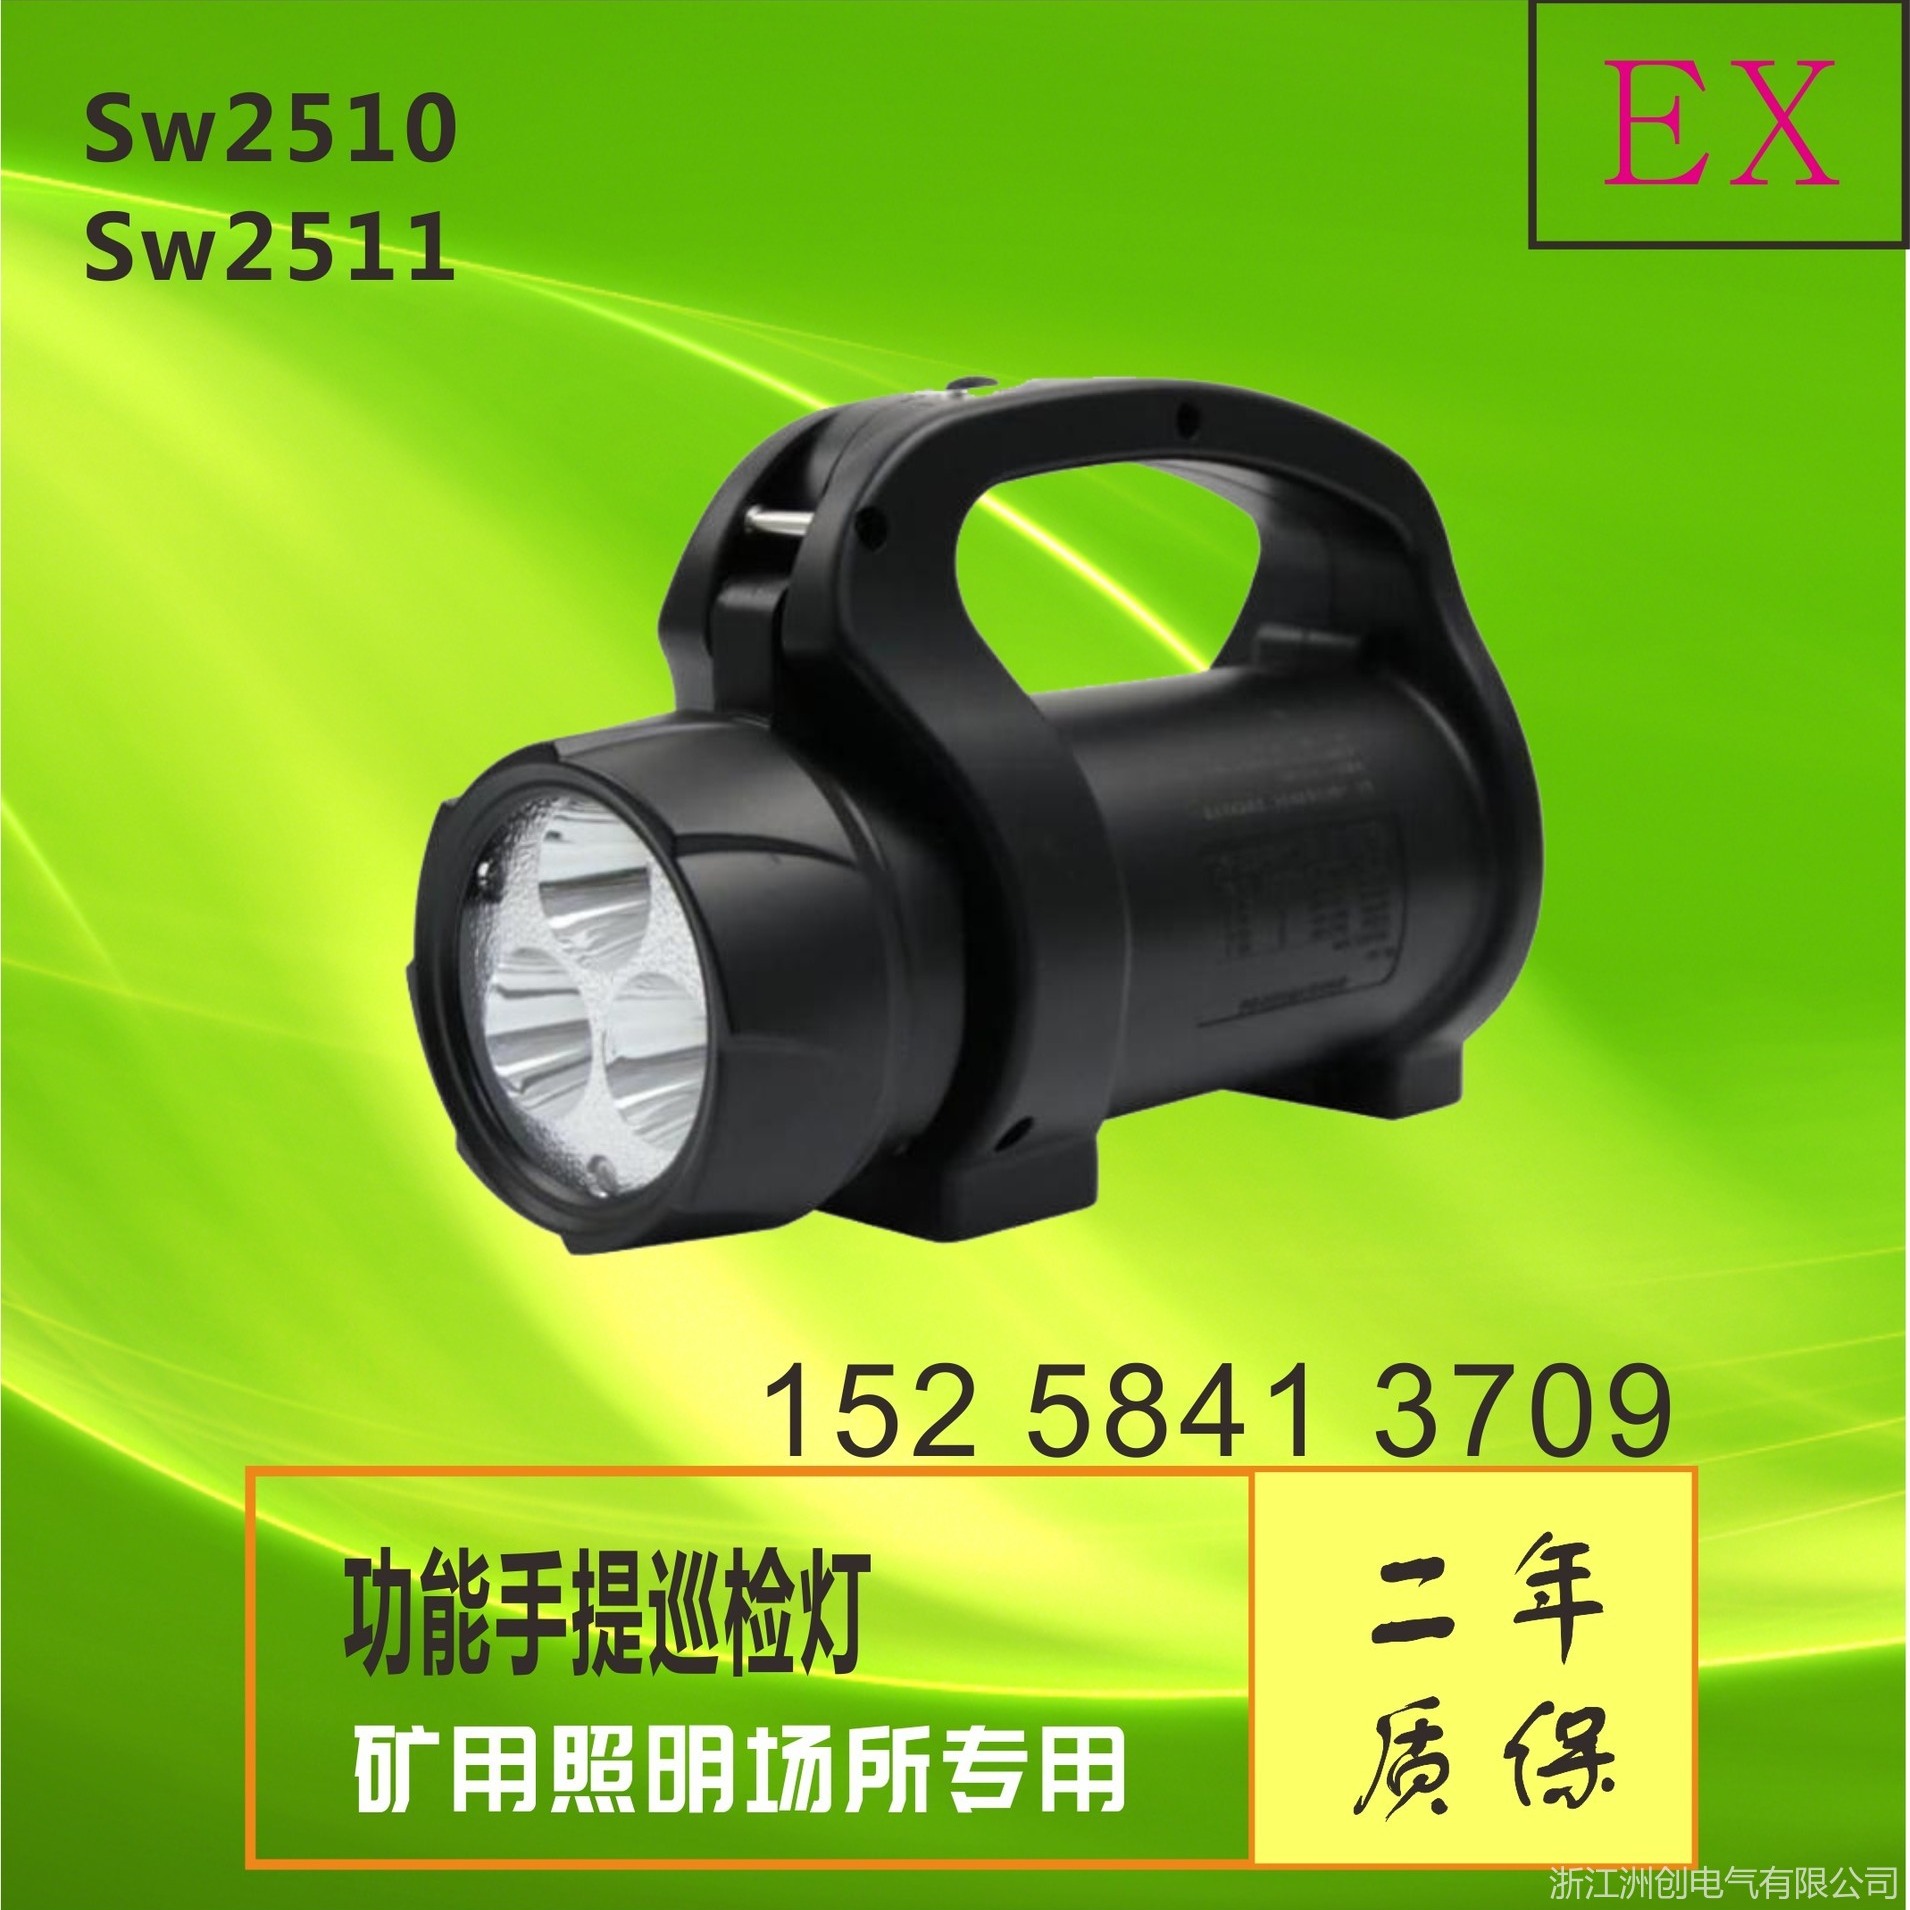 尚为SW2500多功能手提巡检灯 SW2510手摇发电磁吸强光探照灯  铁路电业便捷式工作照明灯